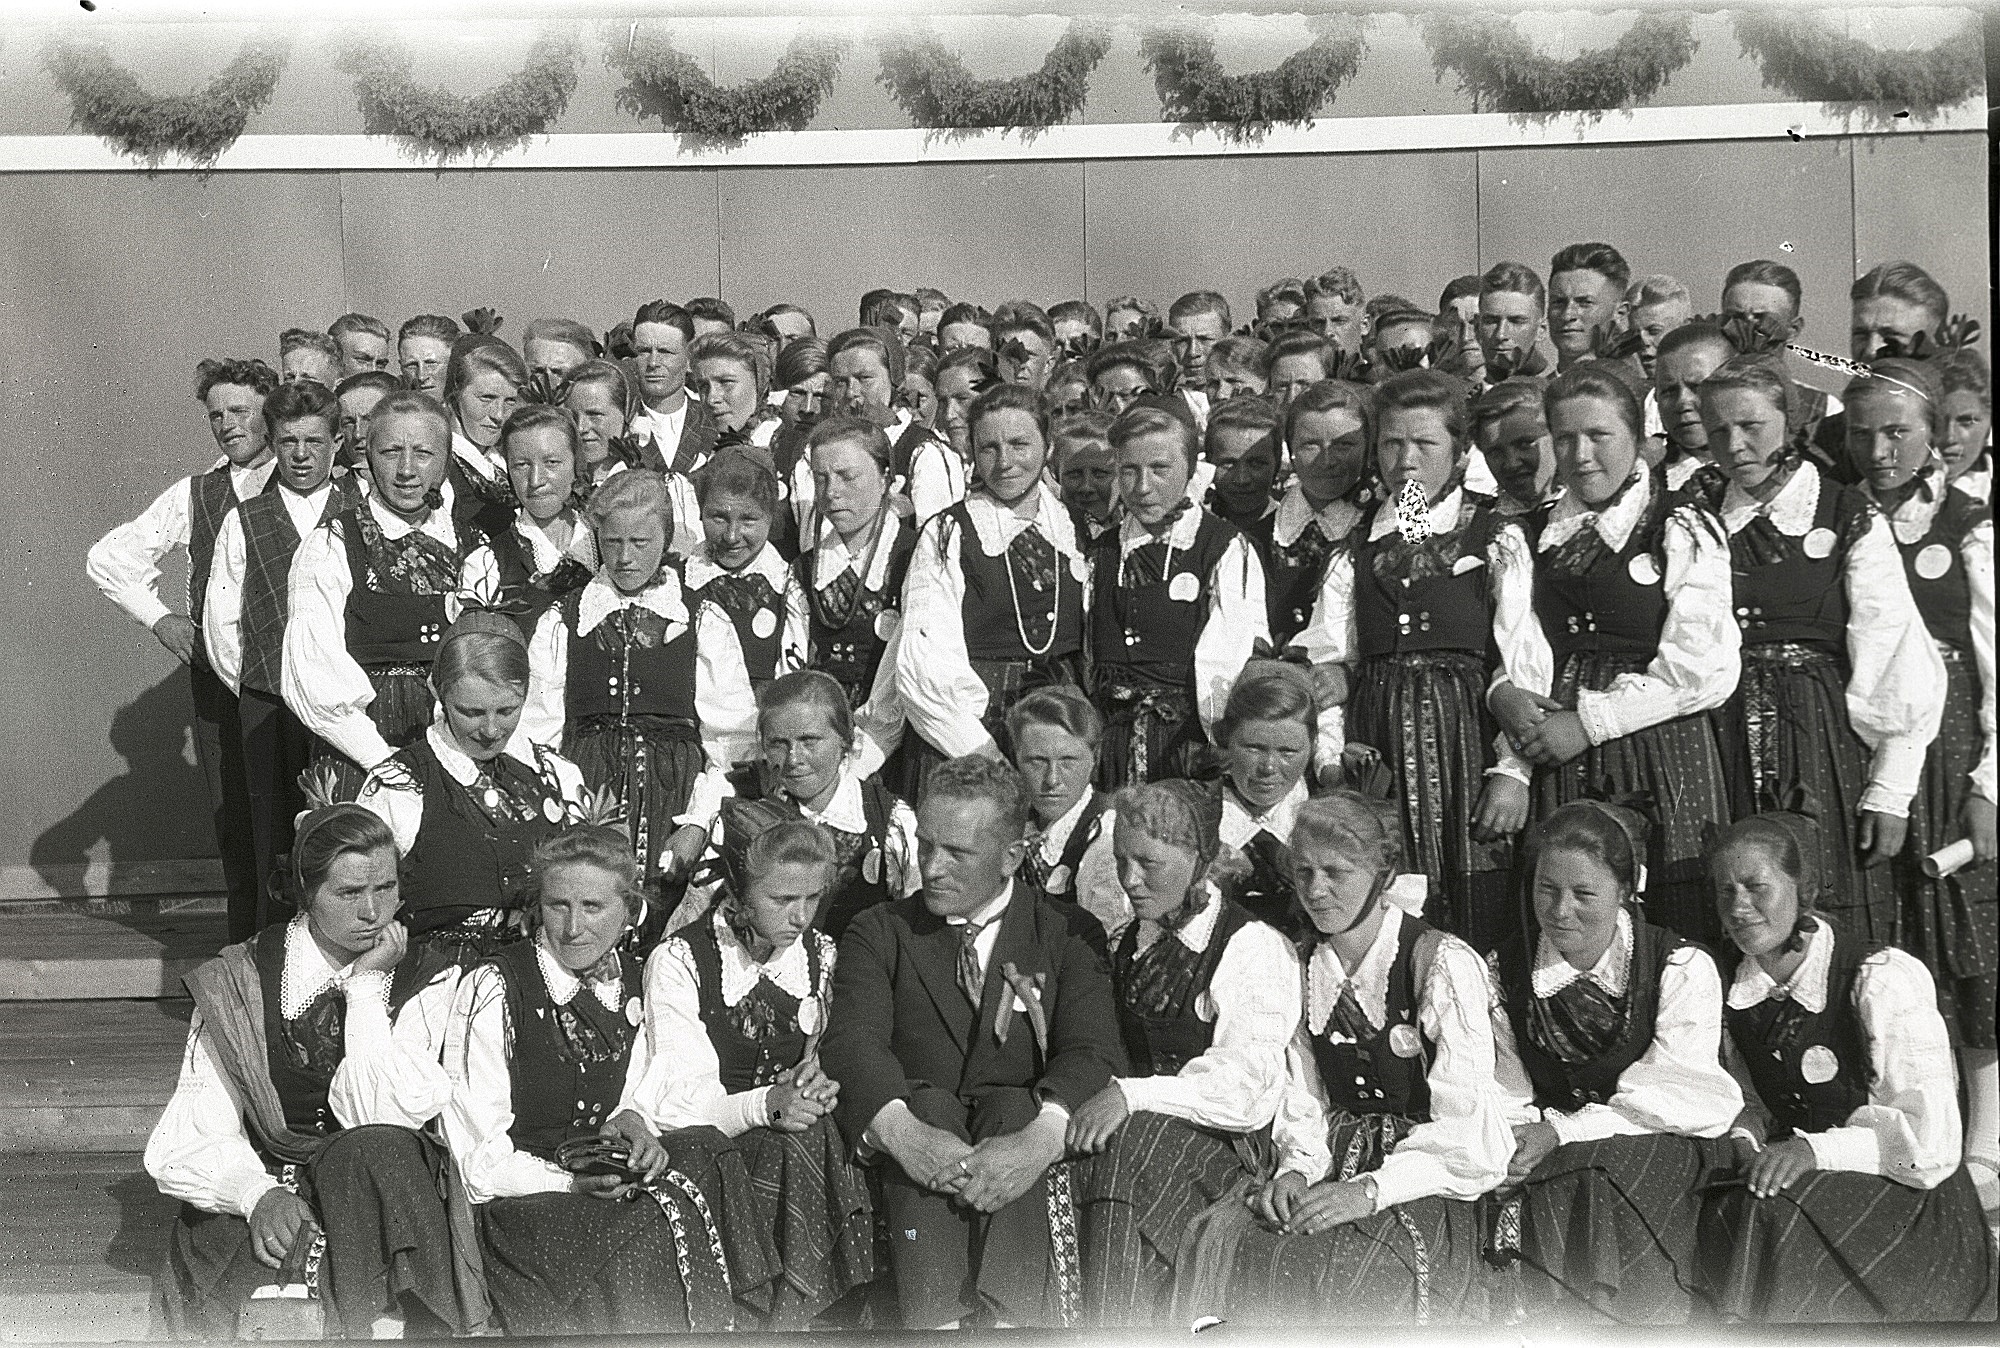 Körsång har alltid varit viktig i Lappfjärd och det syns bra på detta foto från den stora sångfesten 1930, där det kan svårt att räkna hur många som har samlats runt körledaren Selim Knus.